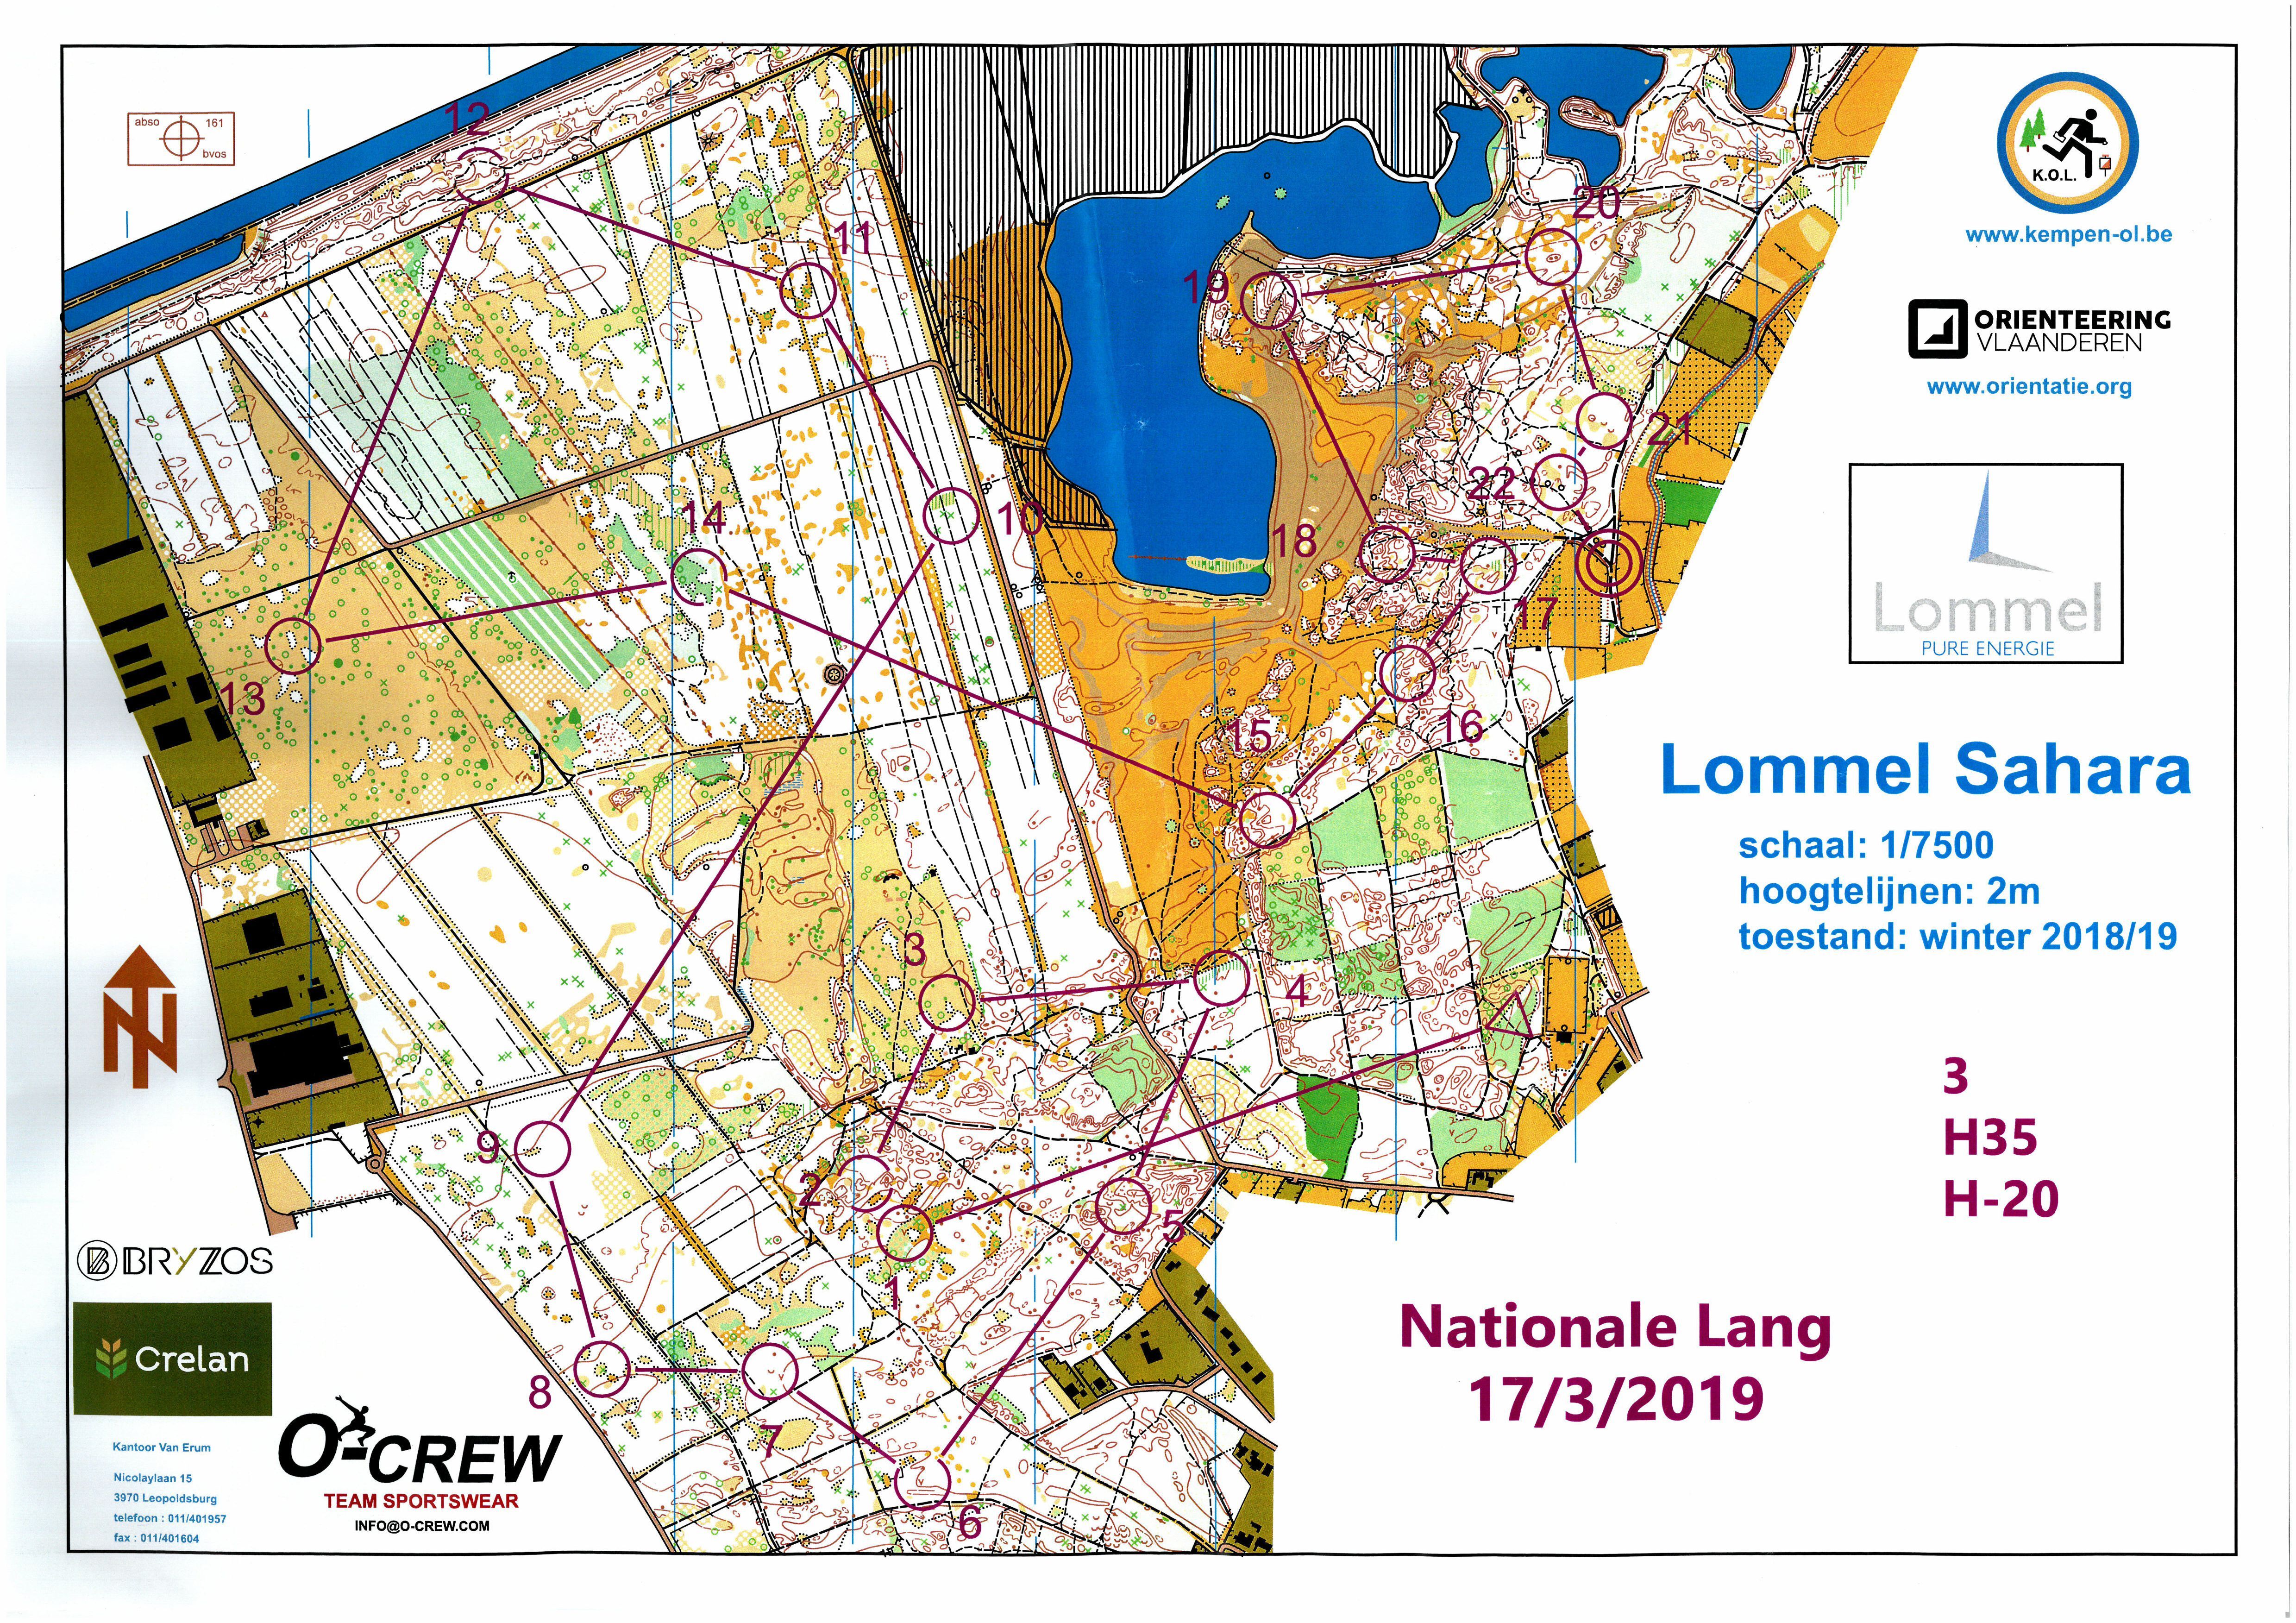 Nationale LD Lommel (2019-03-17)